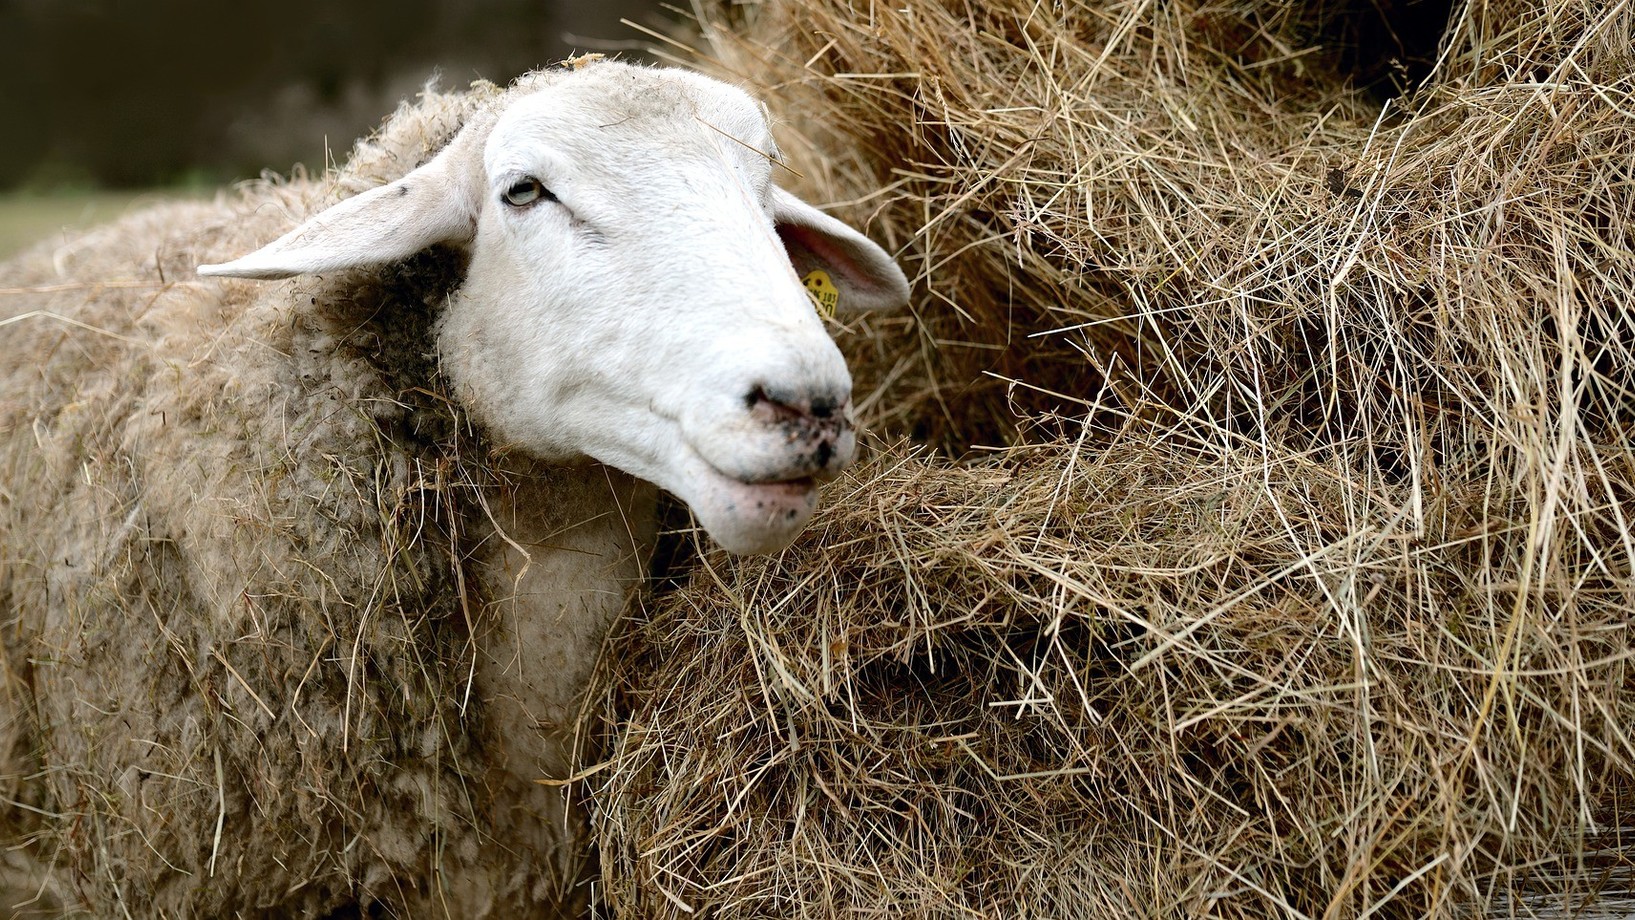 Ein Schaf das neben einem Strohhaufen steht und Stroh frisst